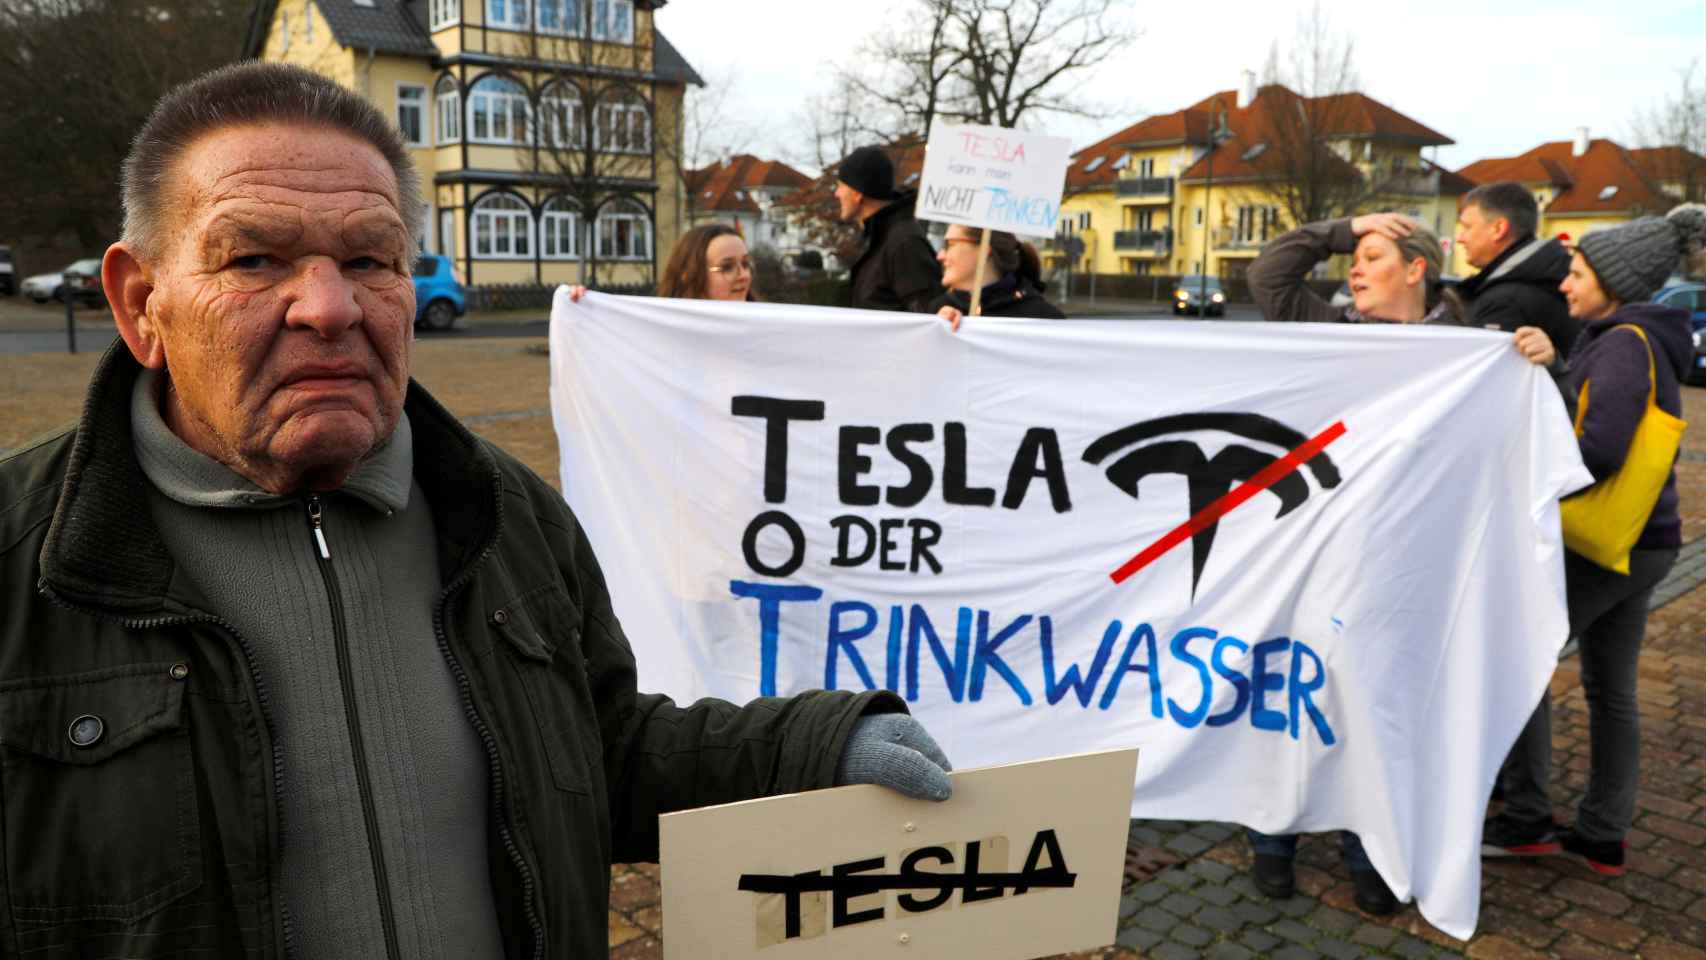 La fábrica europea de Tesla ha recibido críticas